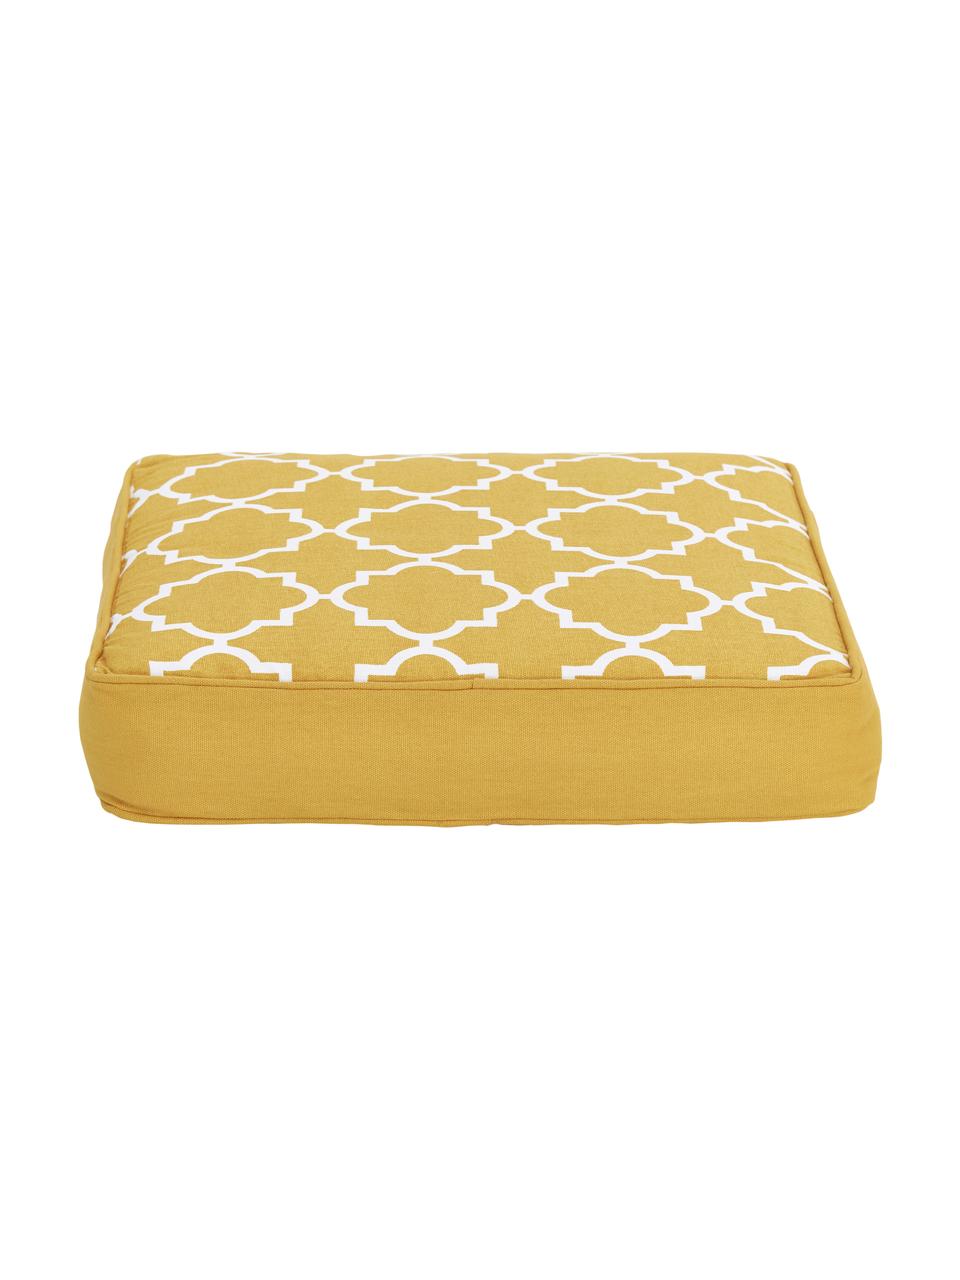 Hohes Sitzkissen Lana in Gelb/Weiß, Bezug: 100% Baumwolle, Gelb, 40 x 40 cm